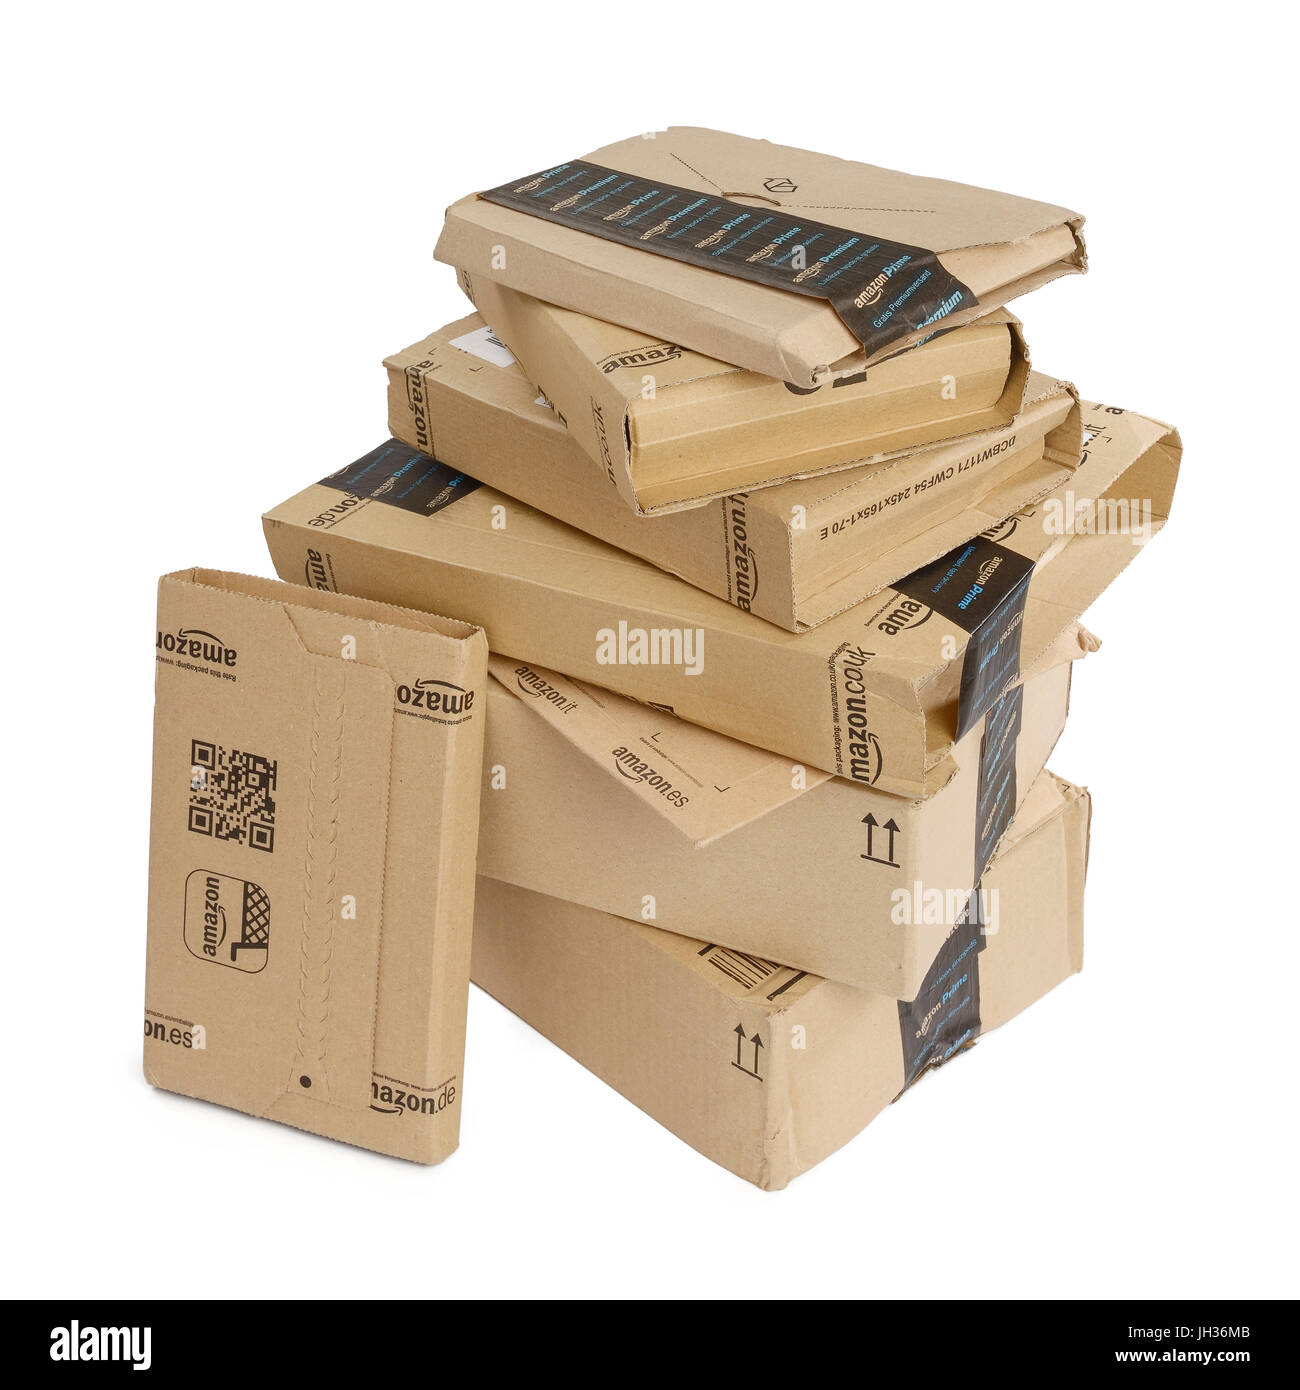 A pile of Amazon boxes Stock Photo